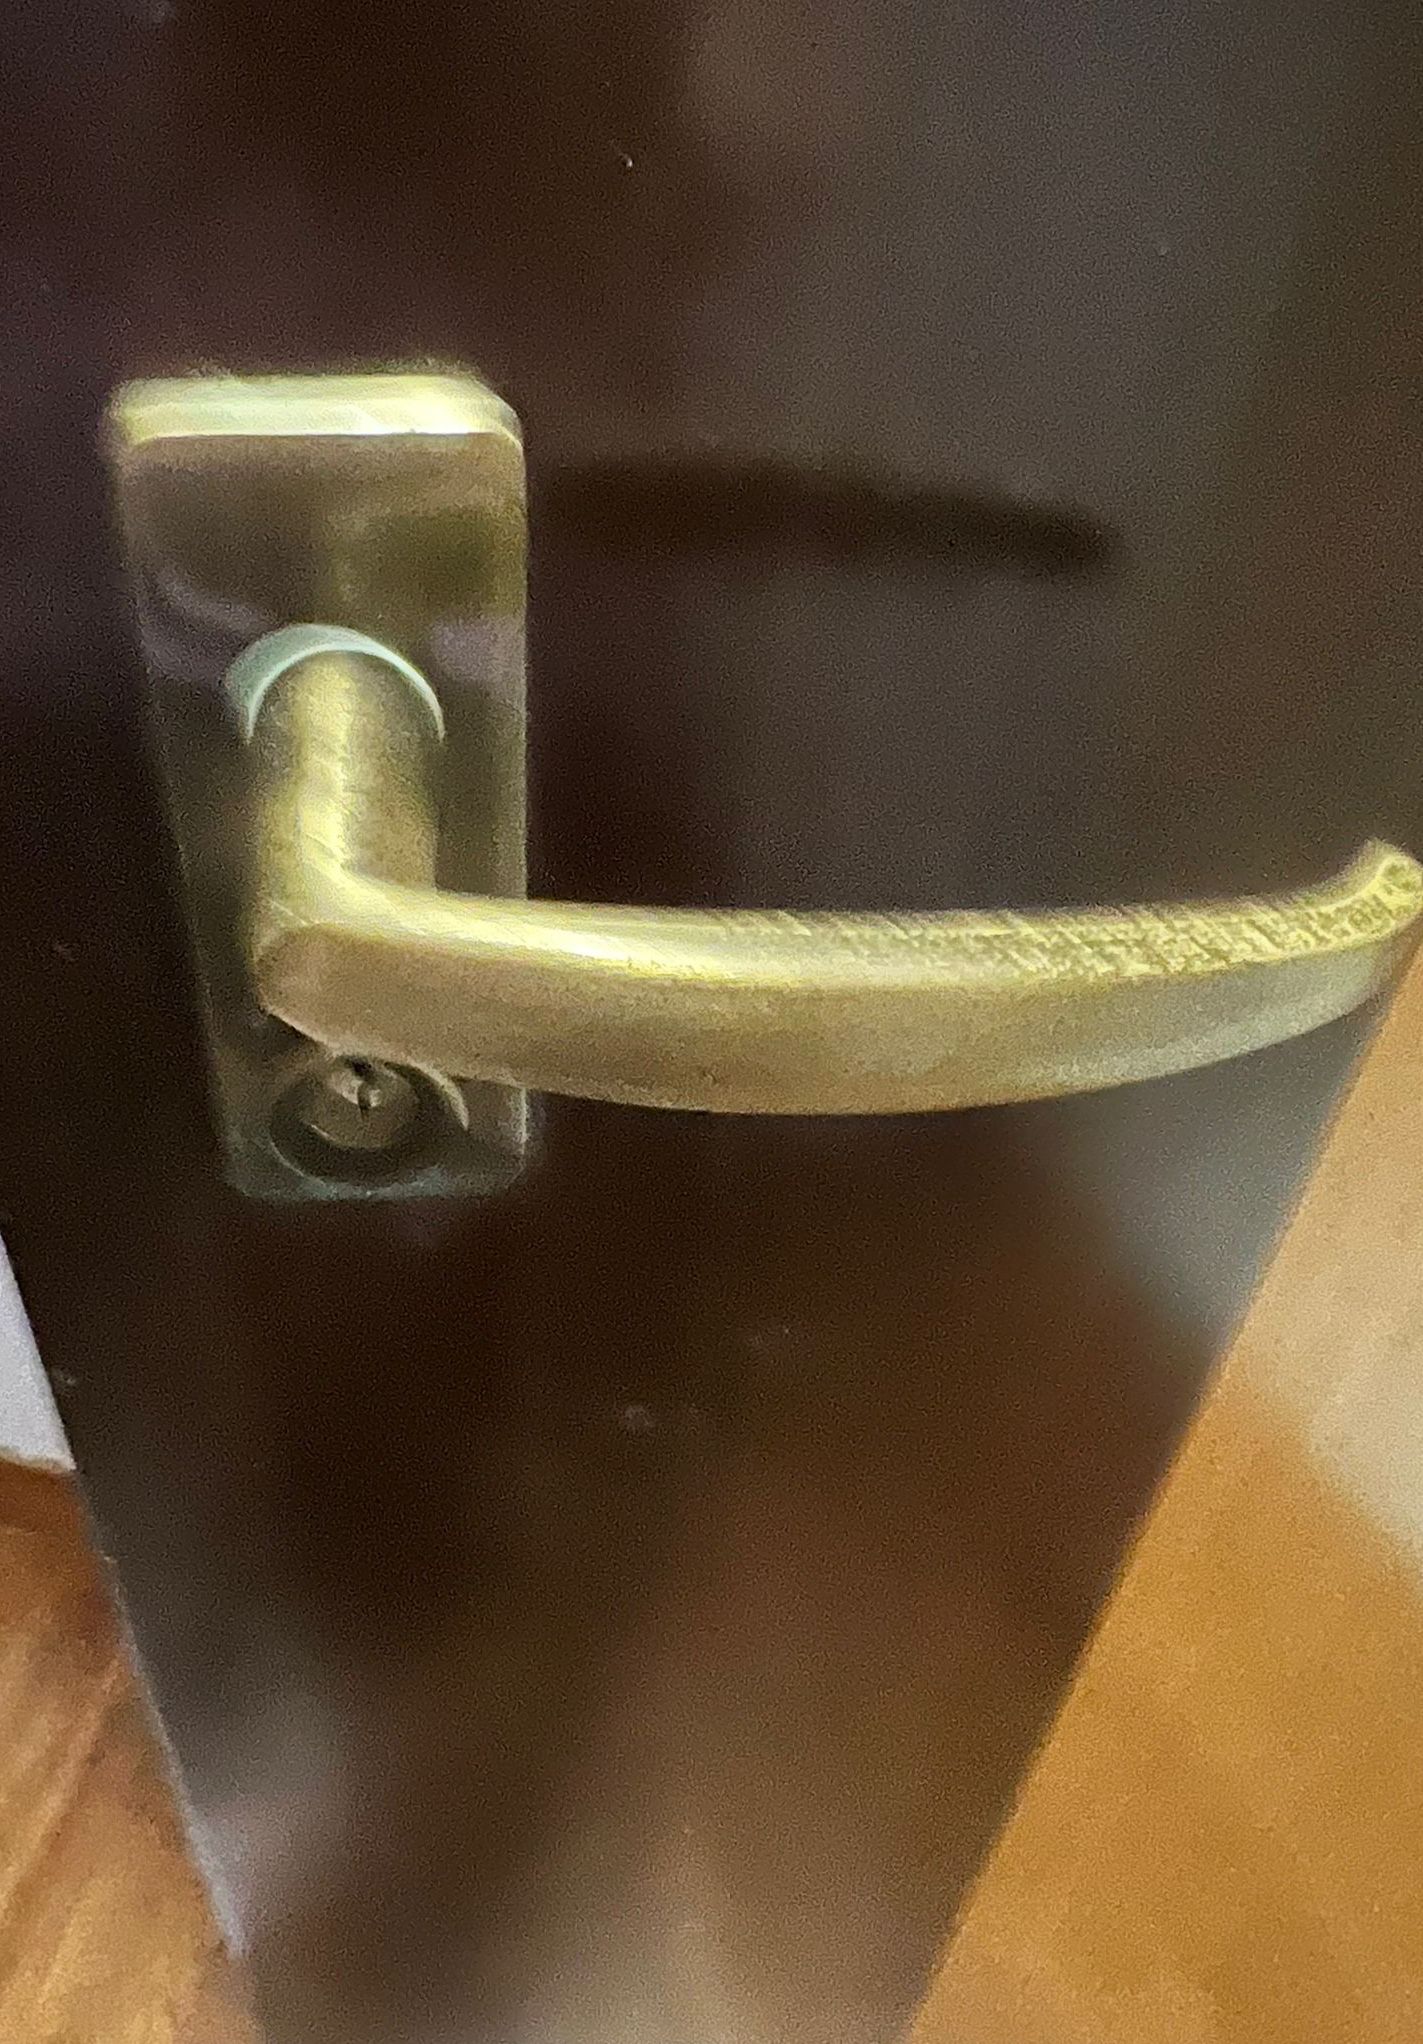 Door Lockset Replacement In Compassvale